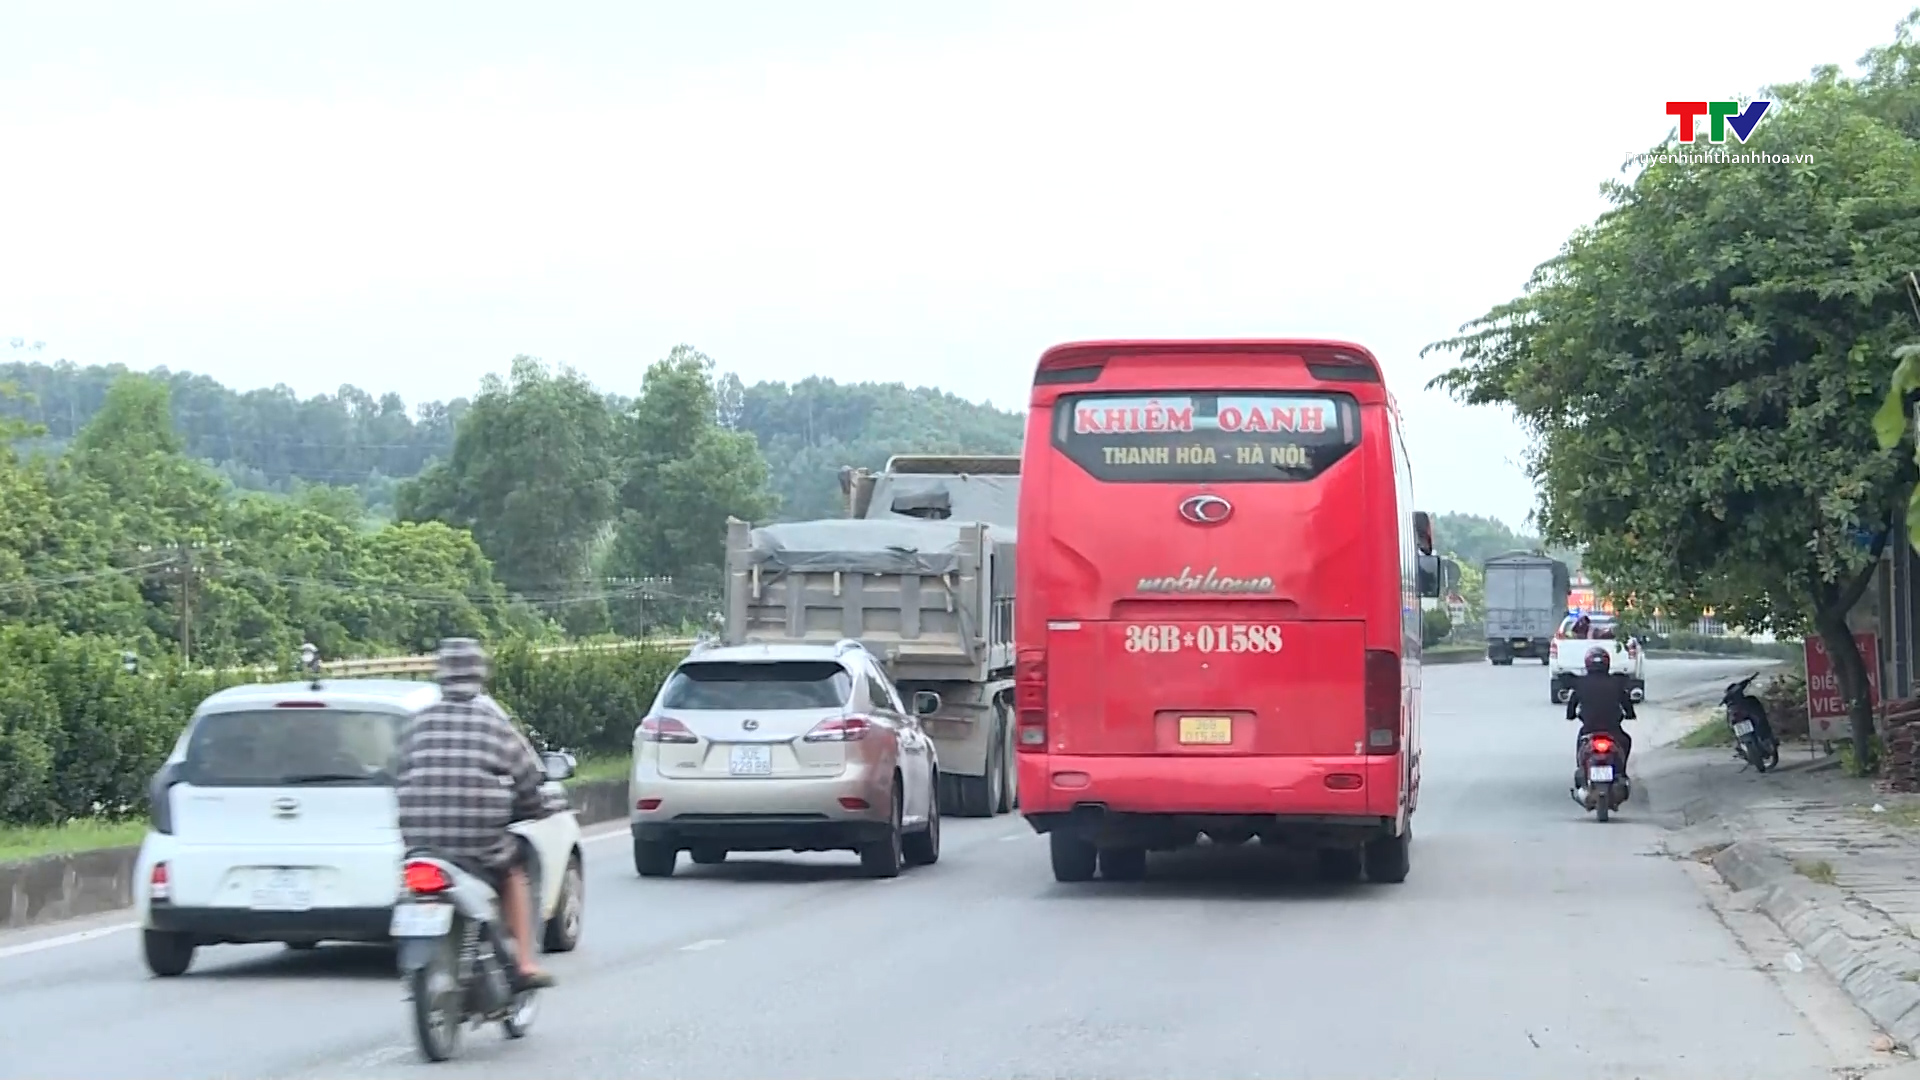 Thu hồi không thời hạn 42 giấy phép kinh doanh vận tải bằng ô tô ở Thanh Hóa- Ảnh 1.